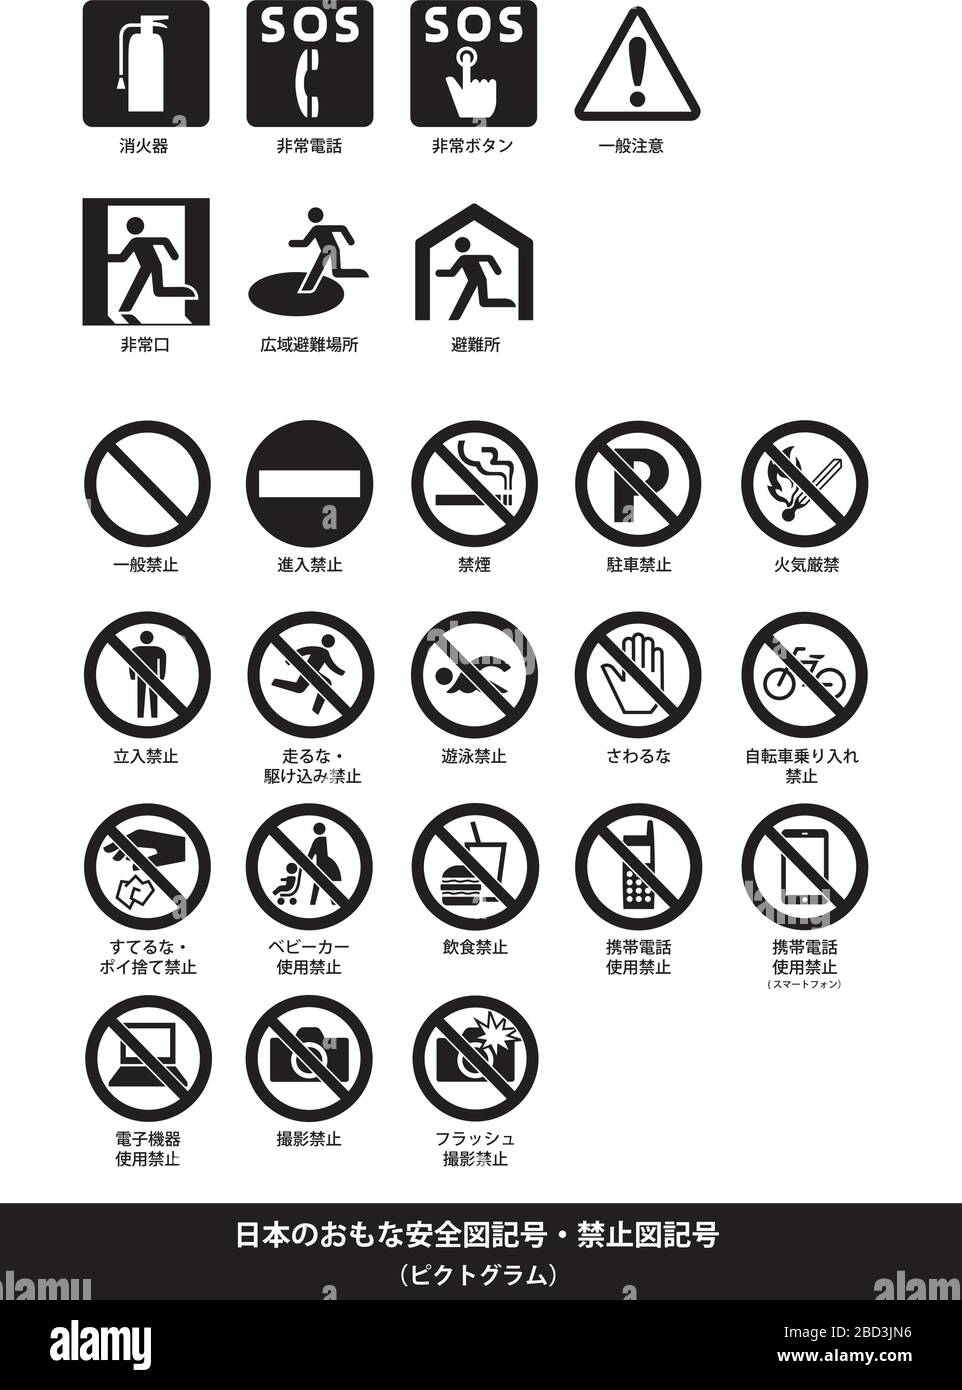 Principaux panneaux de sécurité publique et d'interdiction (pictogramme) Illustration de Vecteur